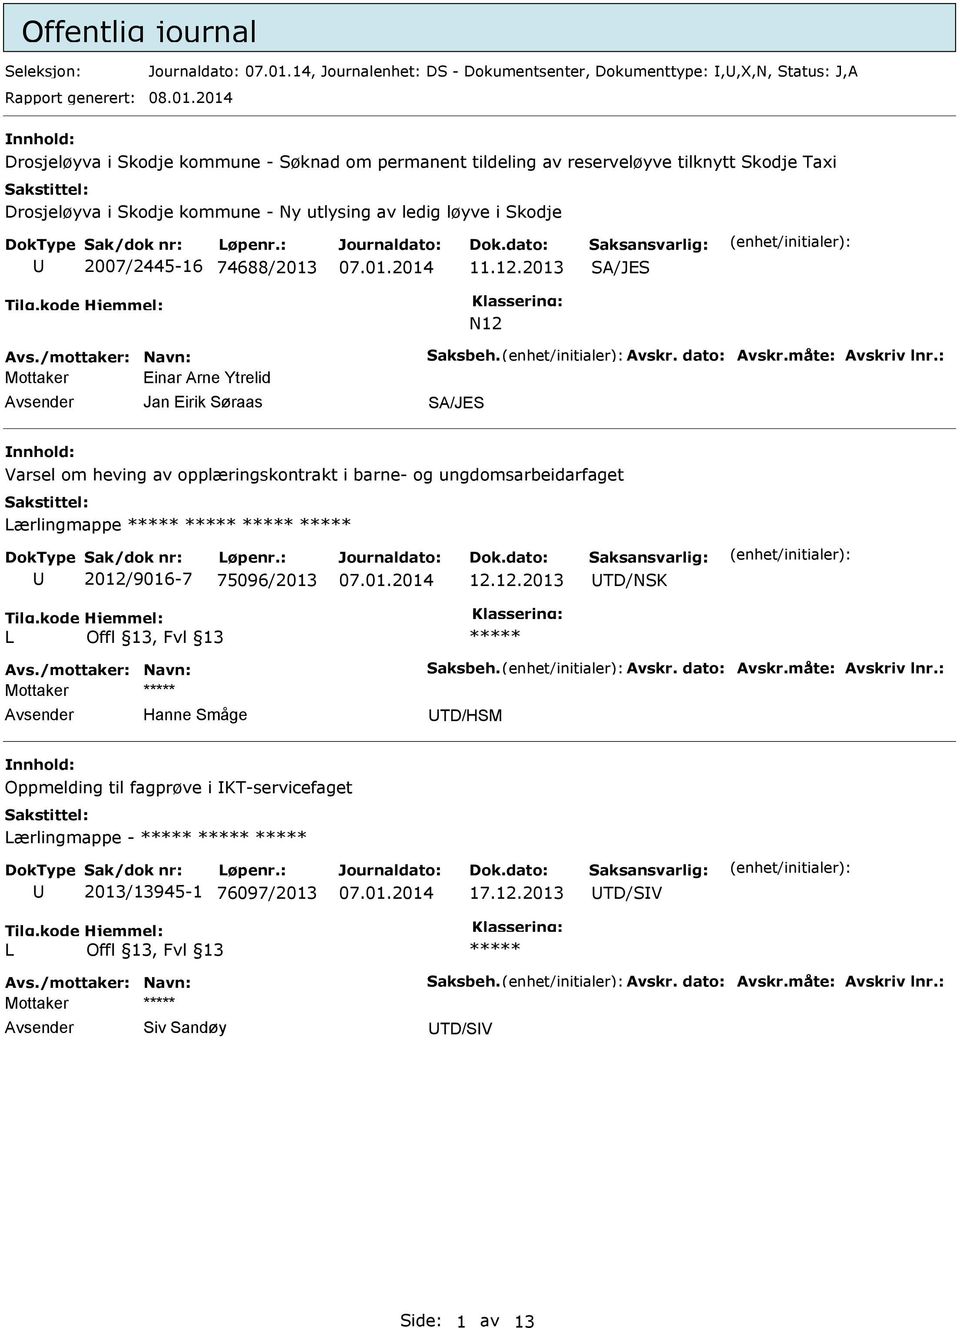 2014 nnhold: Drosjeløyva i Skodje kommune - Søknad om permanent tildeling av reserveløyve tilknytt Skodje Taxi Drosjeløyva i Skodje kommune - Ny utlysing av ledig løyve i Skodje 2007/2445-16